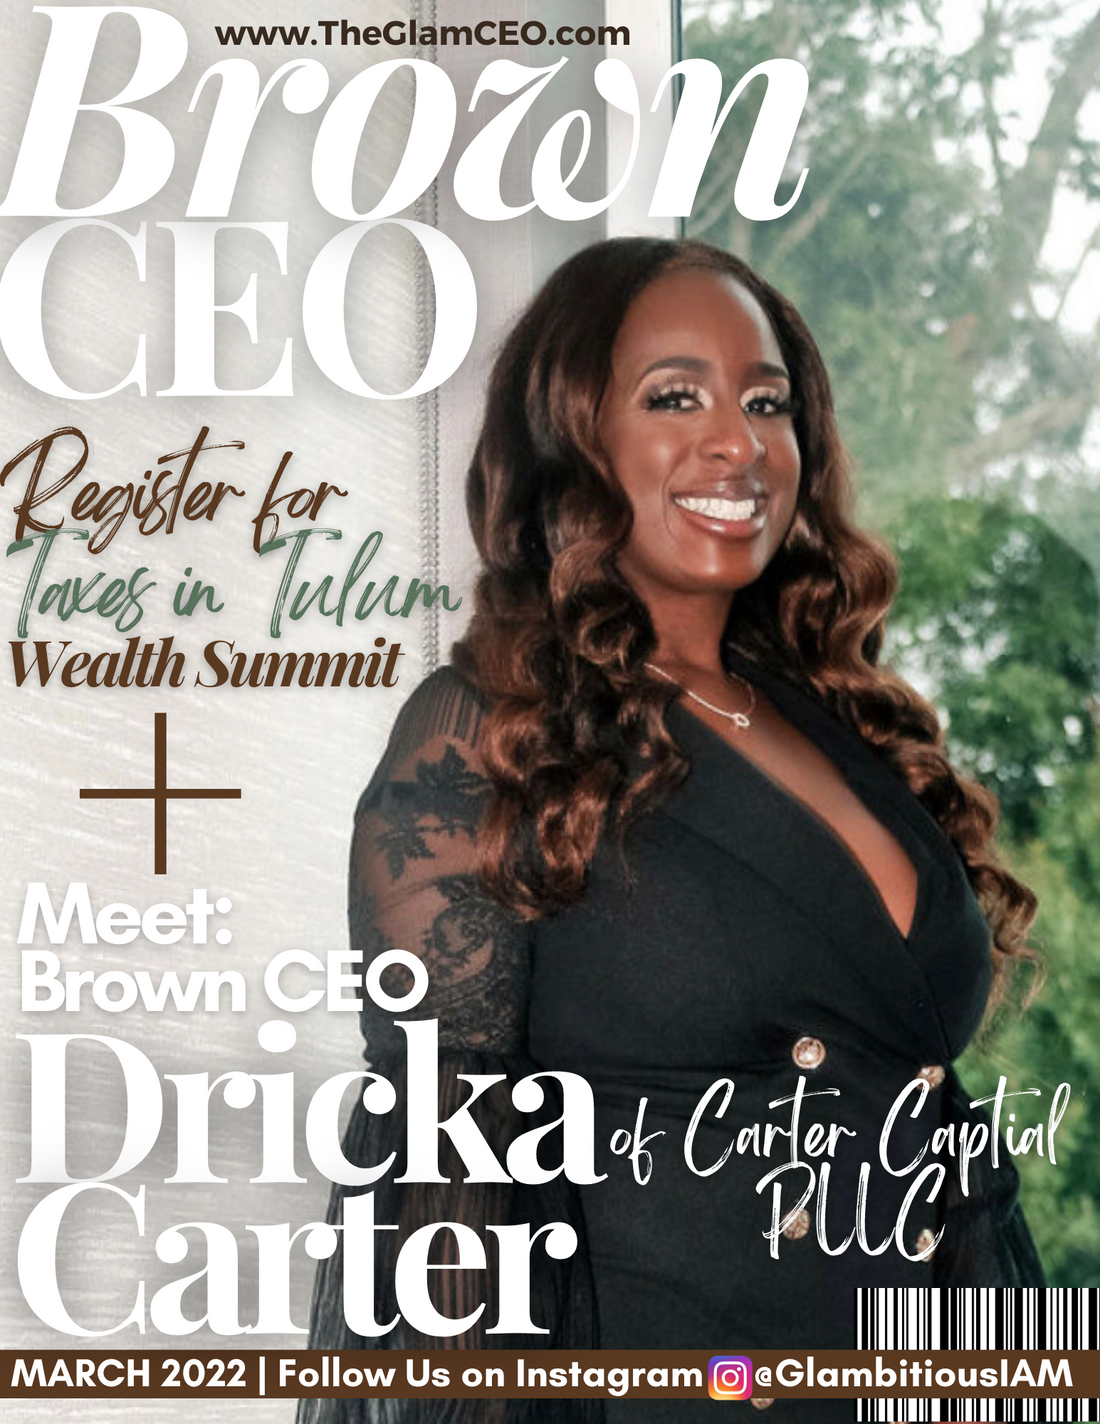 Meet Brown CEO: Dricka Carter